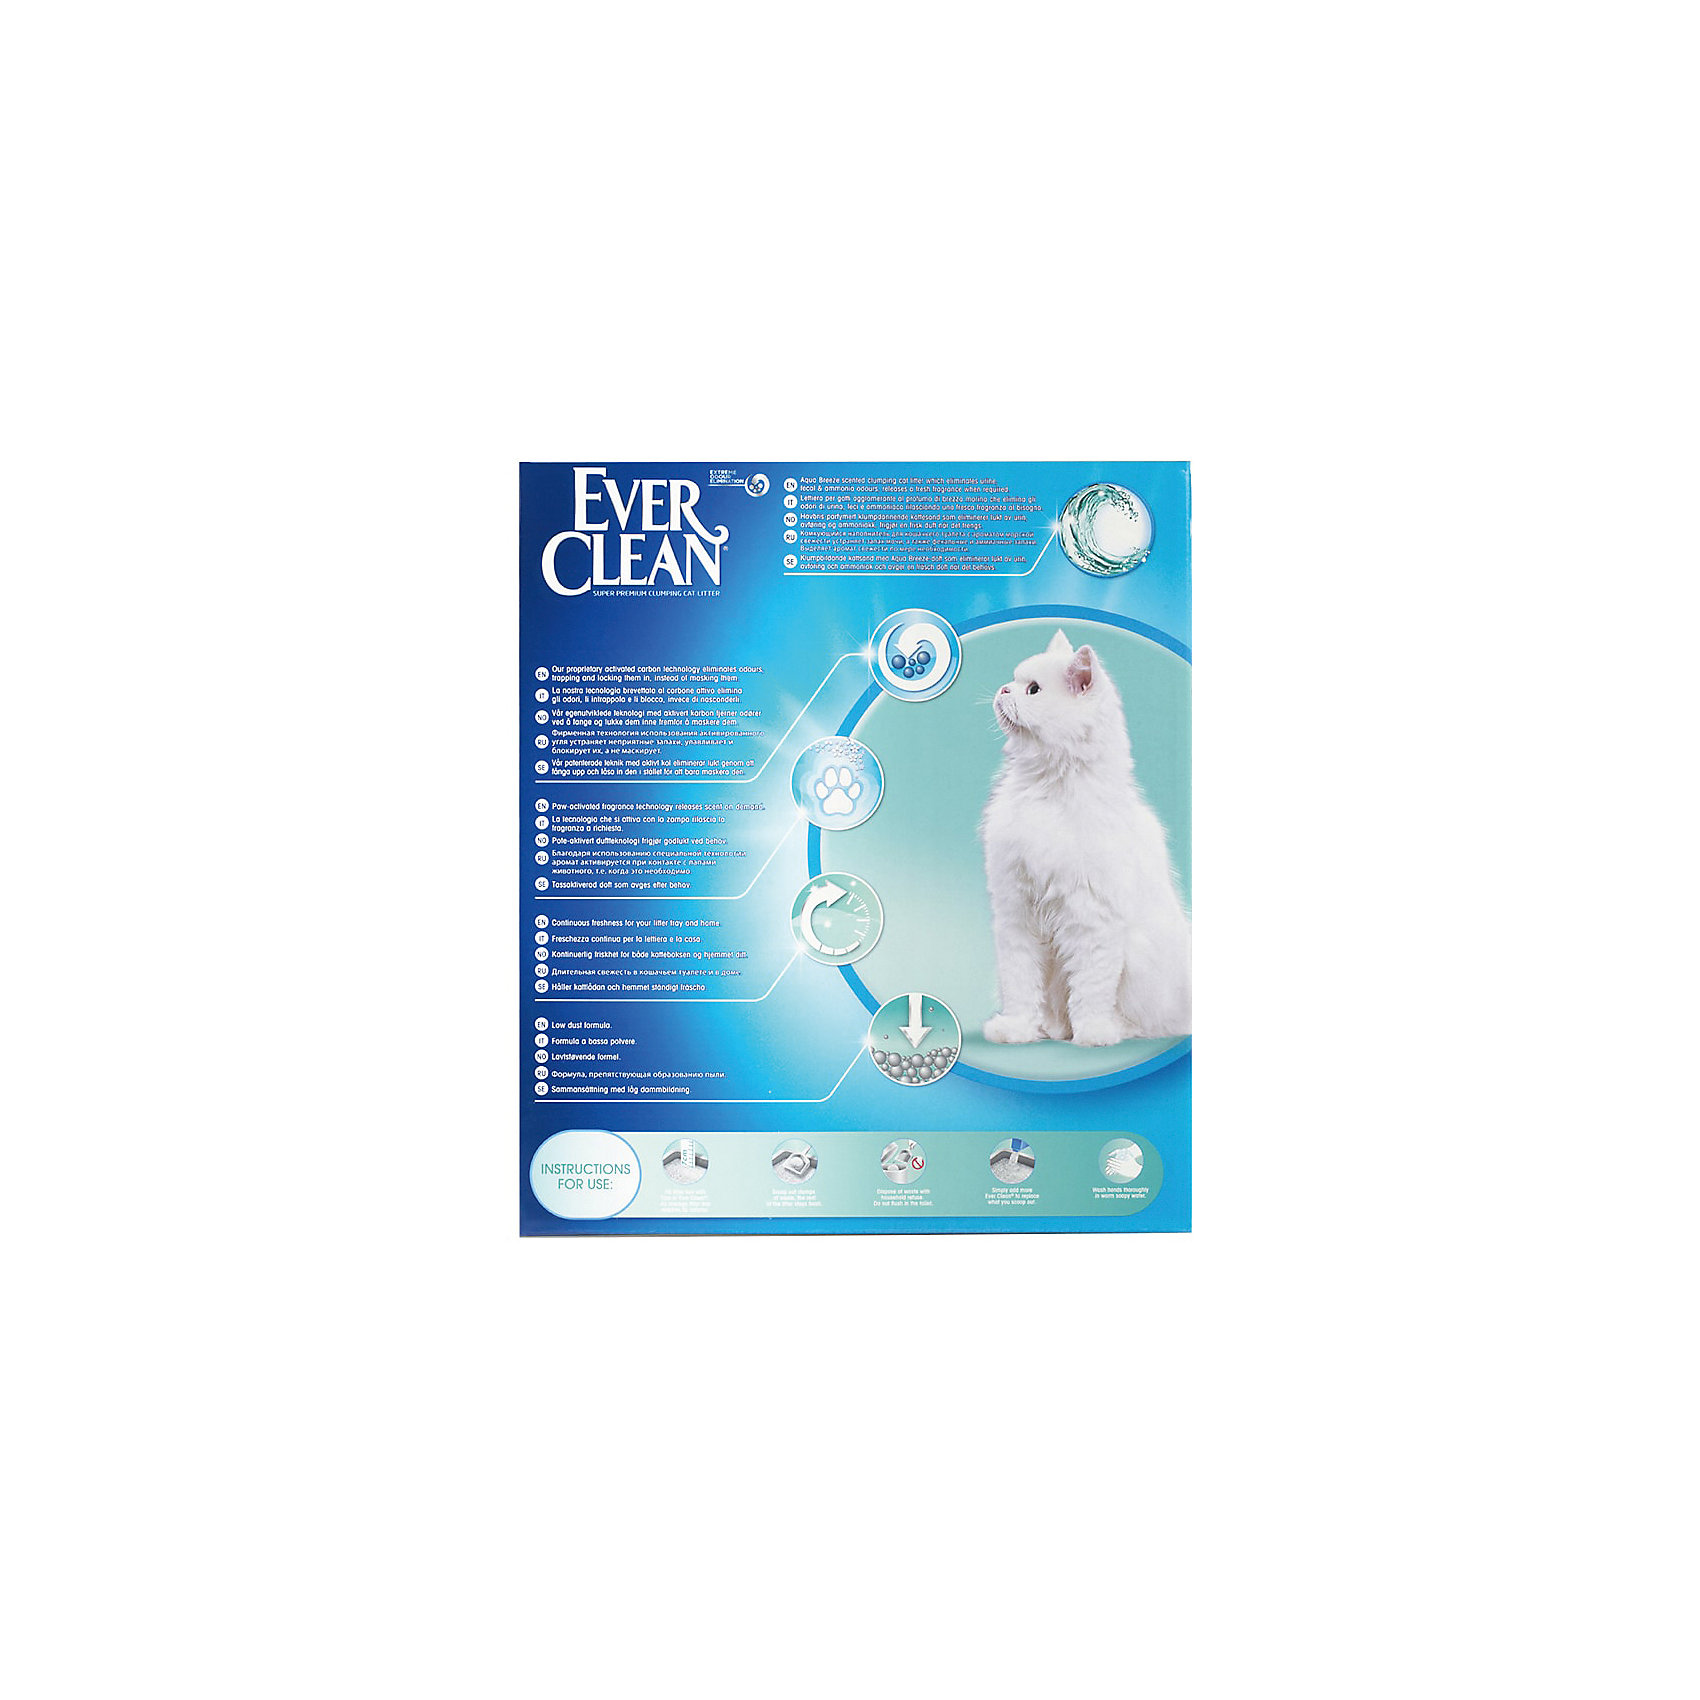 фото Наполнитель для кошачьих туалетов ever clean aqua breeze scent комкующийся, 10 л -